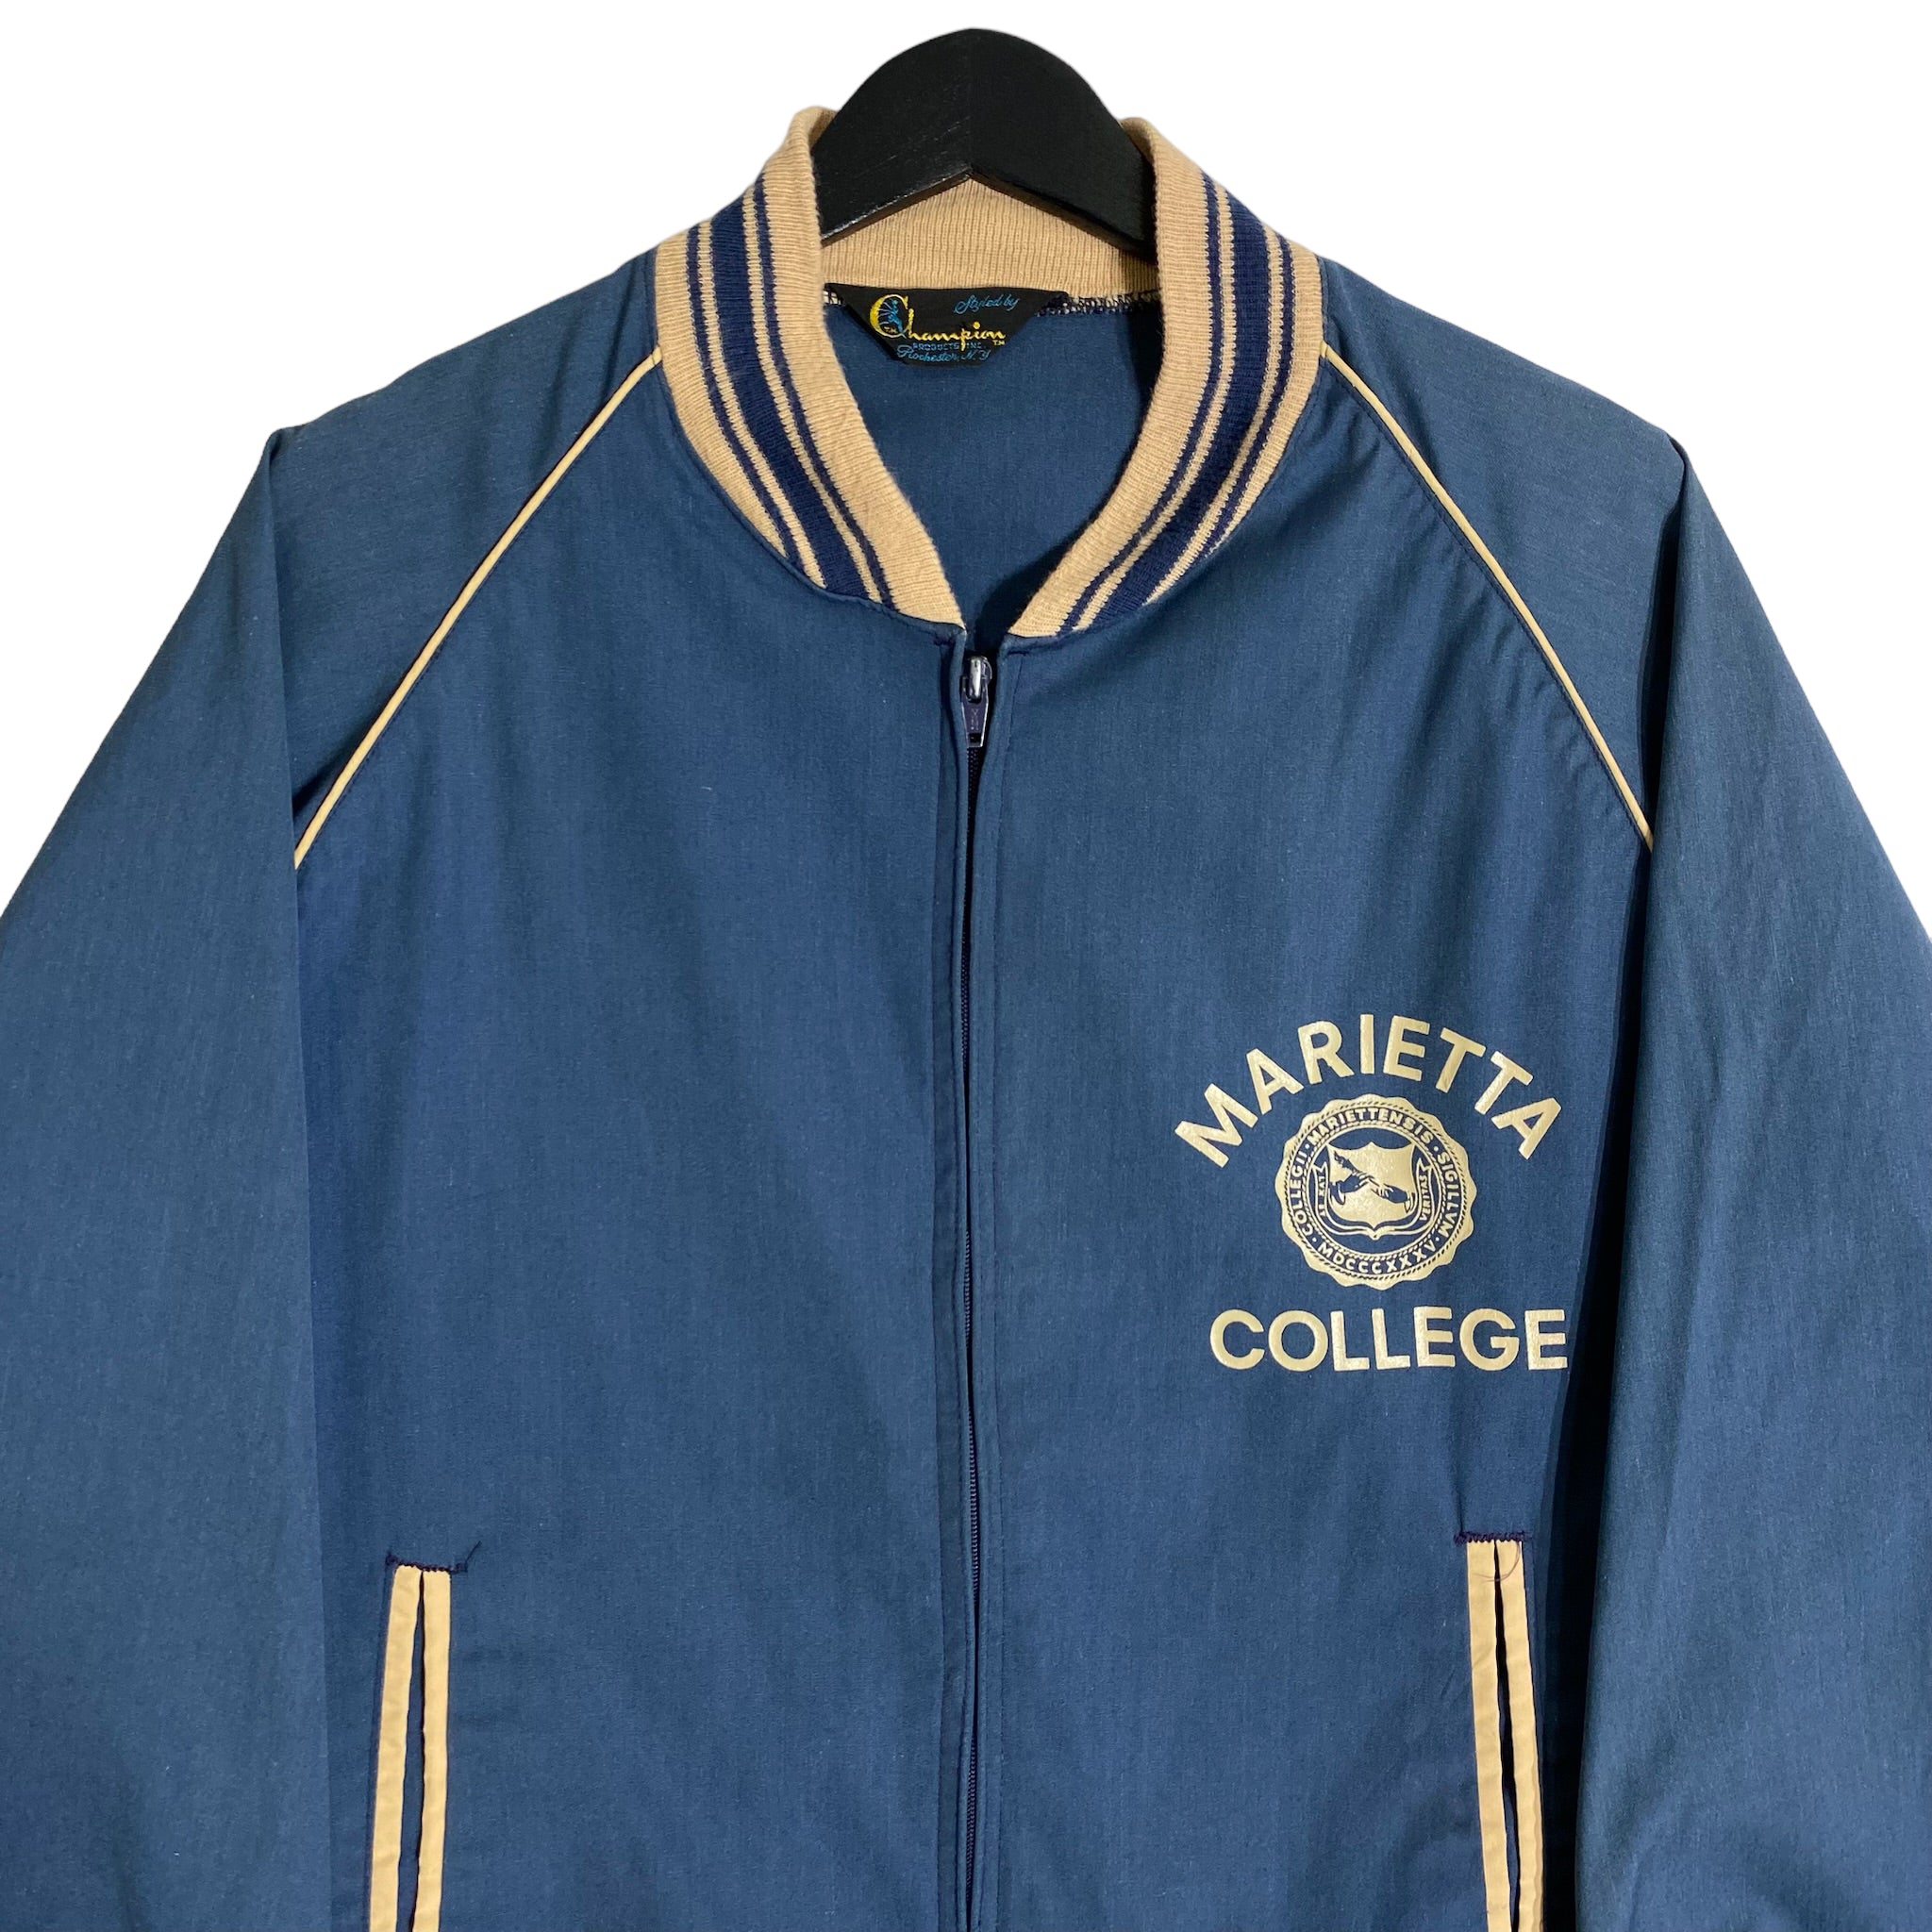 Vintage Champion Marietta College Track Jacket